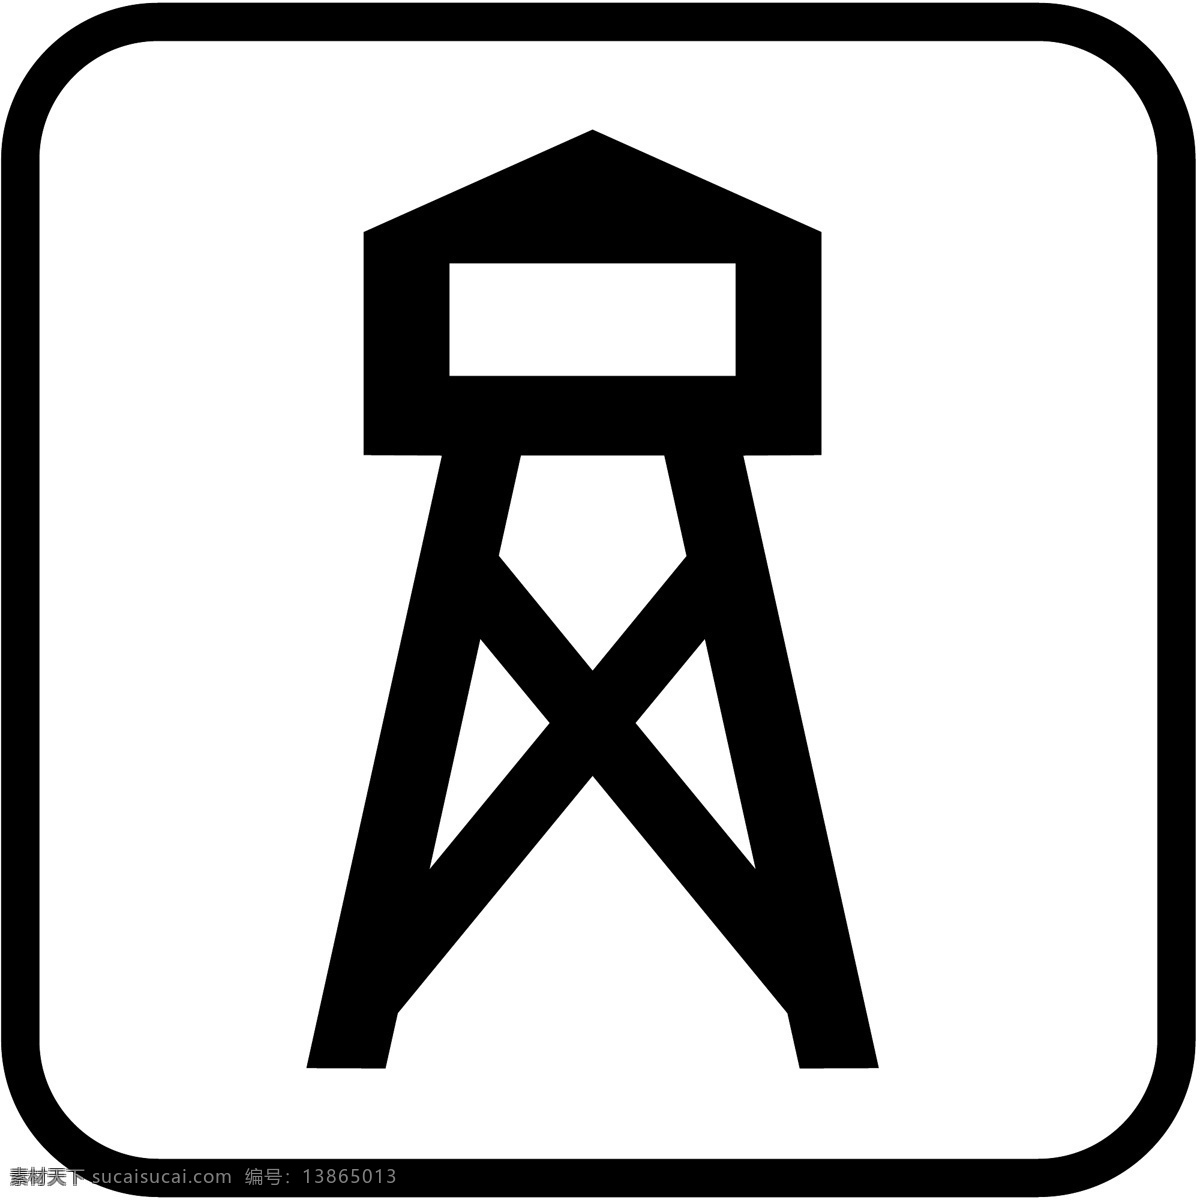 标识 标志 图标 标图 瞭望塔的标识 电视台标志 小标志 企业 logo 标识标志图标 矢量